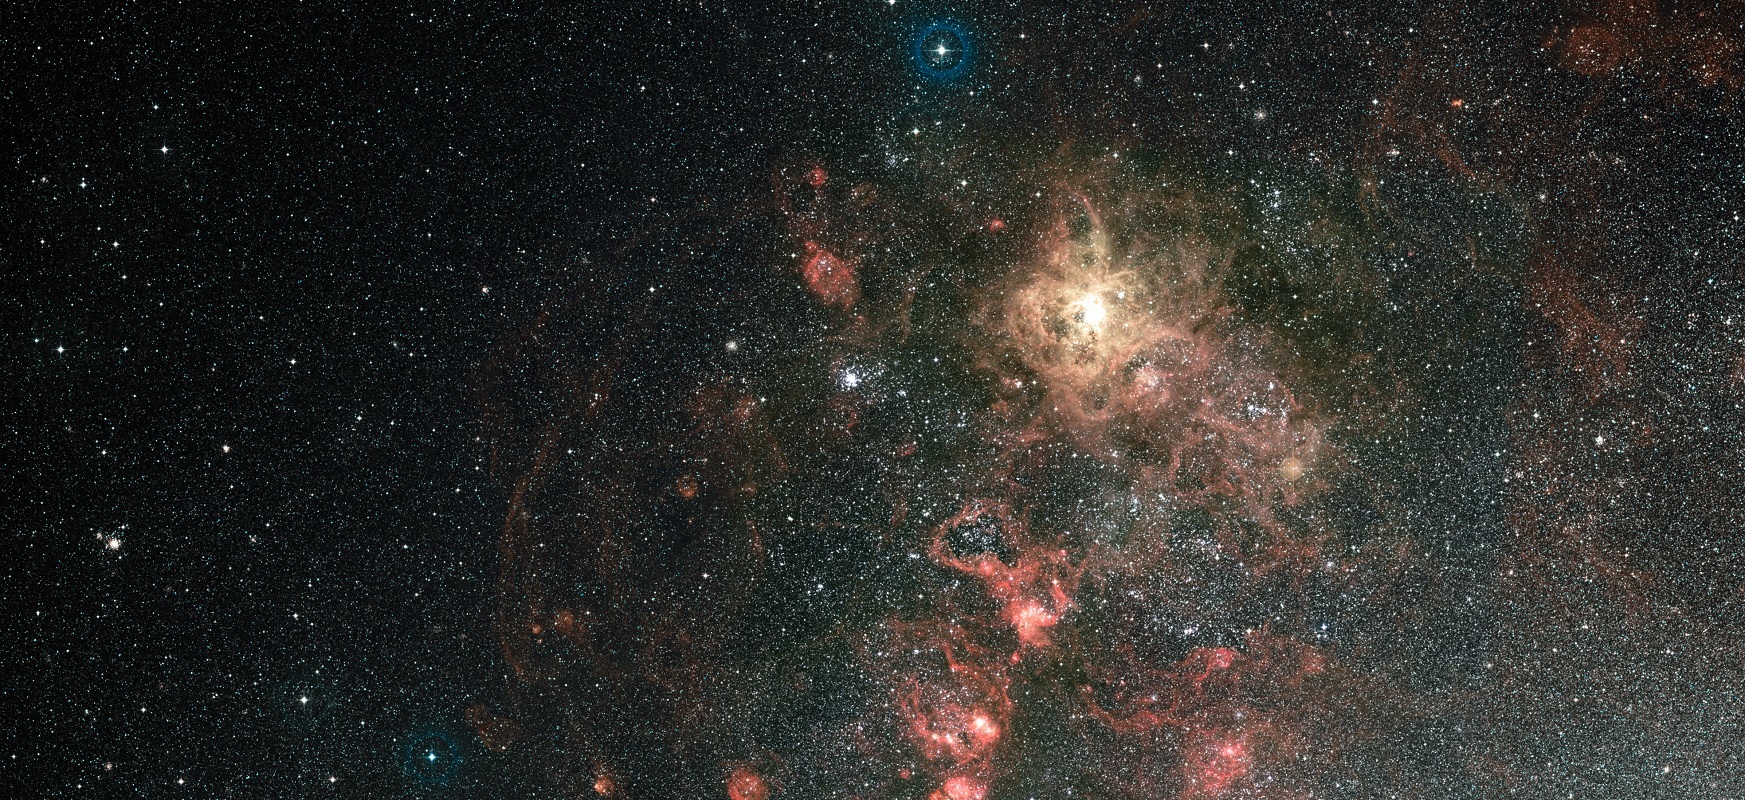 Hubble-k izar masiboak Tarantula Nebulan nola sortzen diren aztertzen du